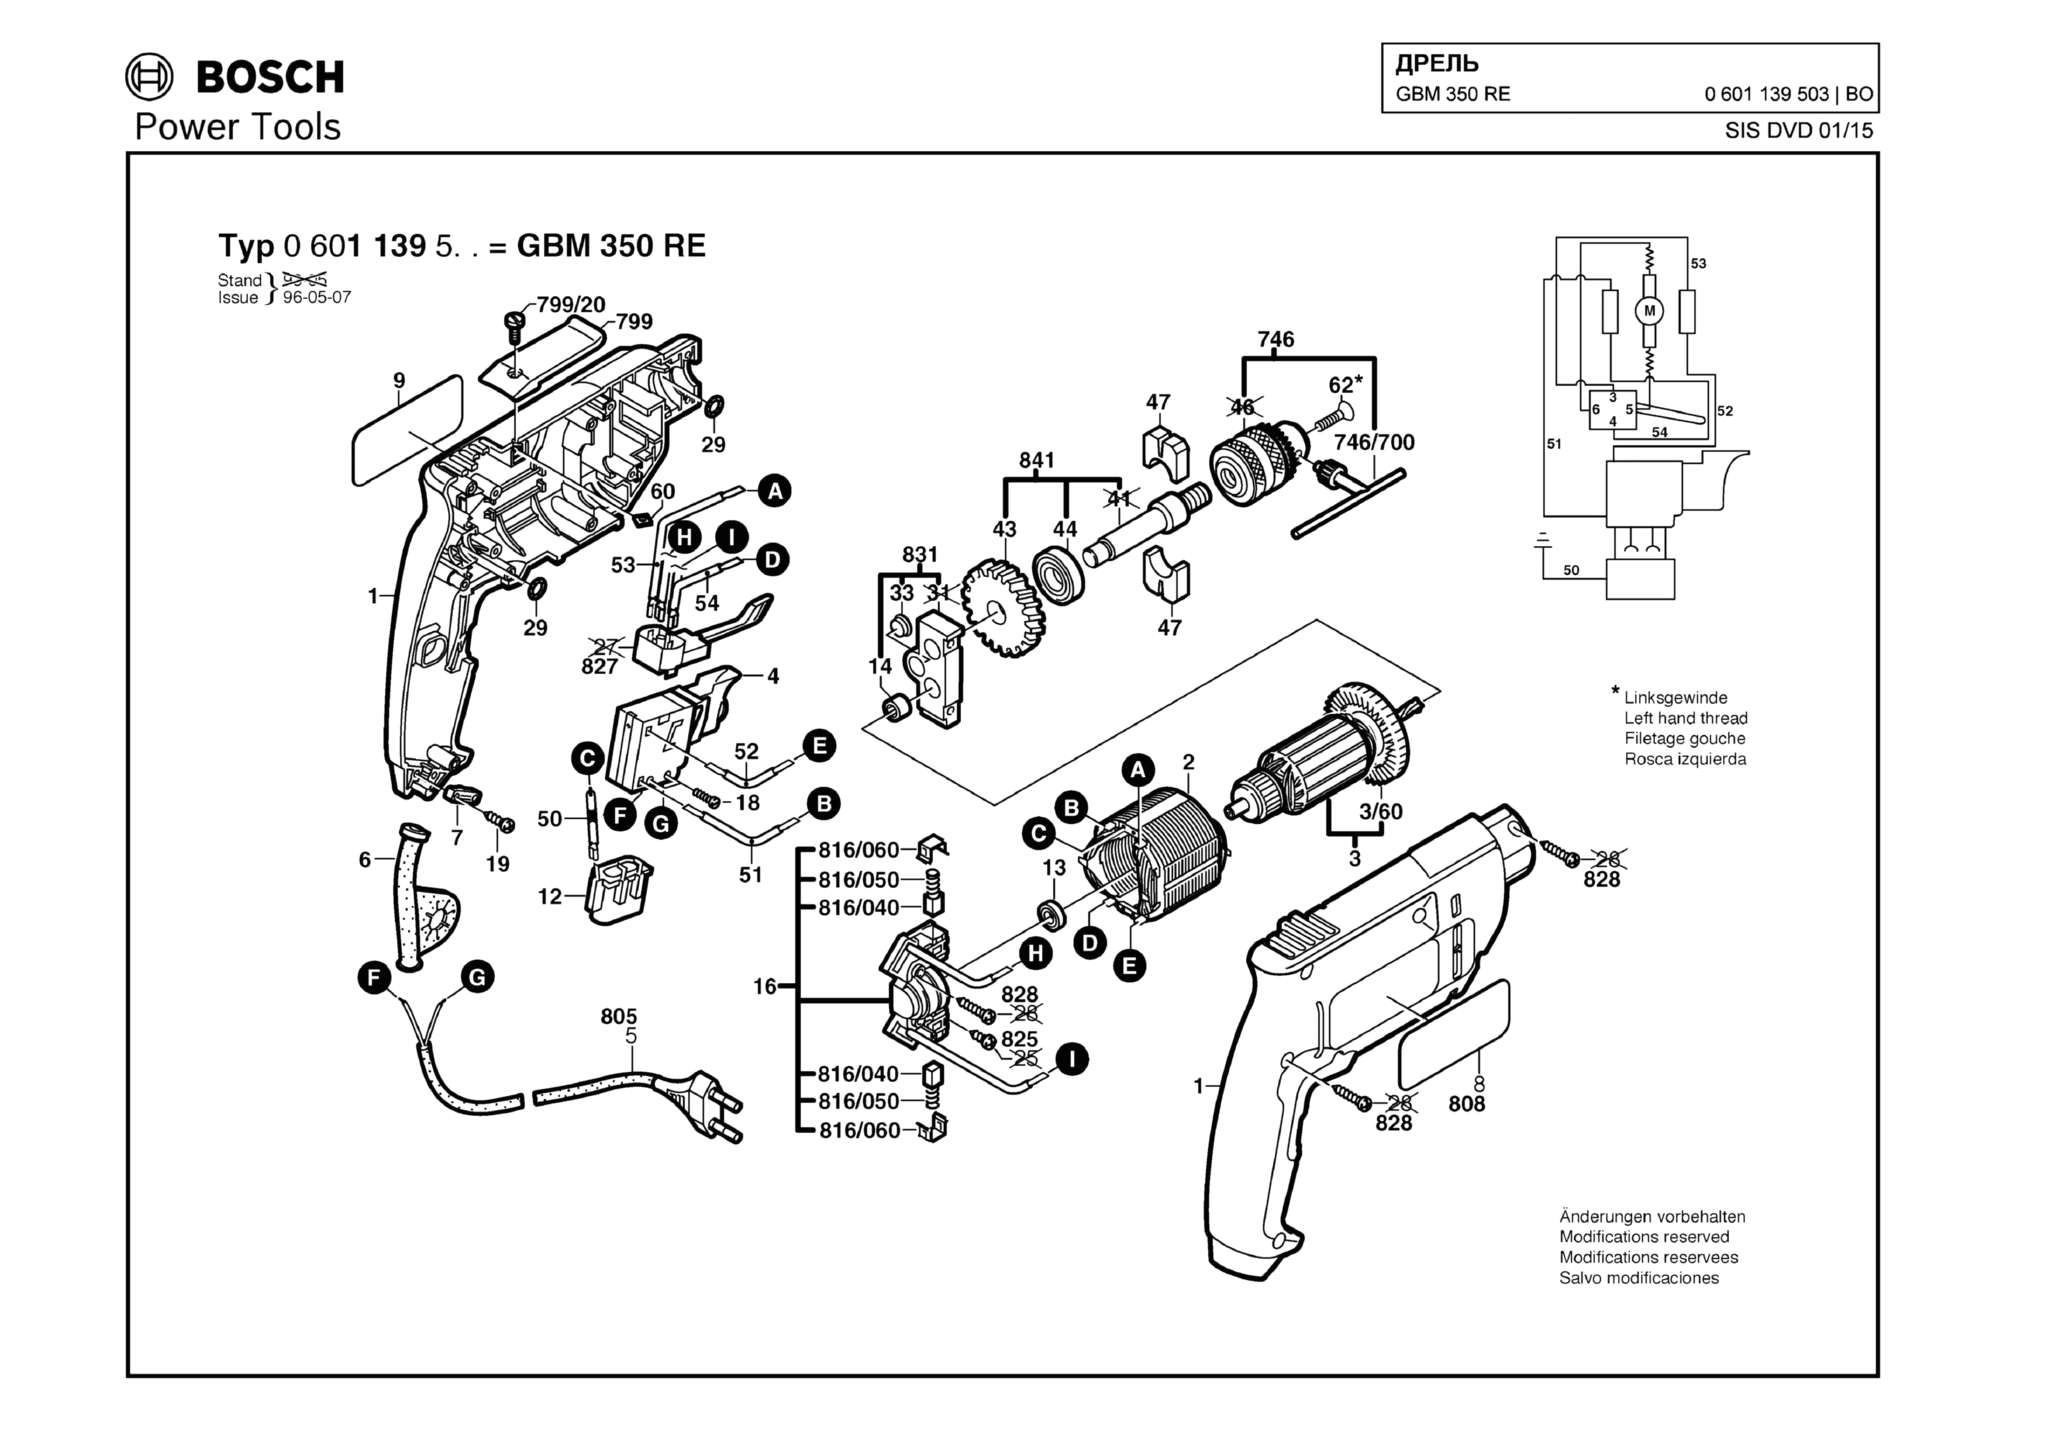 Запчасти, схема и деталировка Bosch GBM 350 RE (ТИП 0601139503)